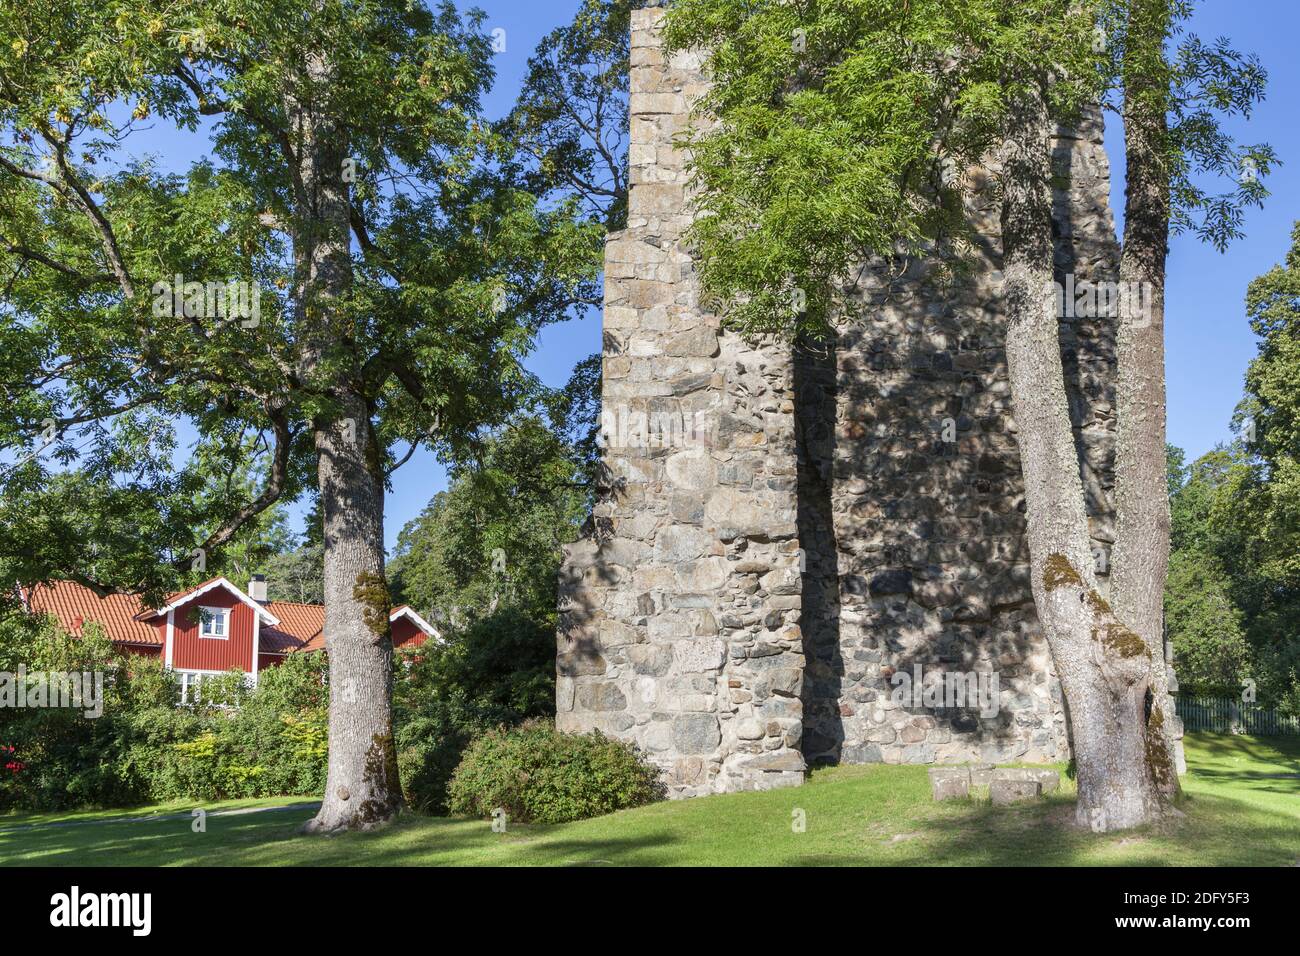 Géographie / Voyage, Suède, Stockholm laen, Sigtuna, ruine d'une église Saint-Olof à Sigtuna, Uppland, droits-supplémentaires-autorisation-Info-non-disponible Banque D'Images